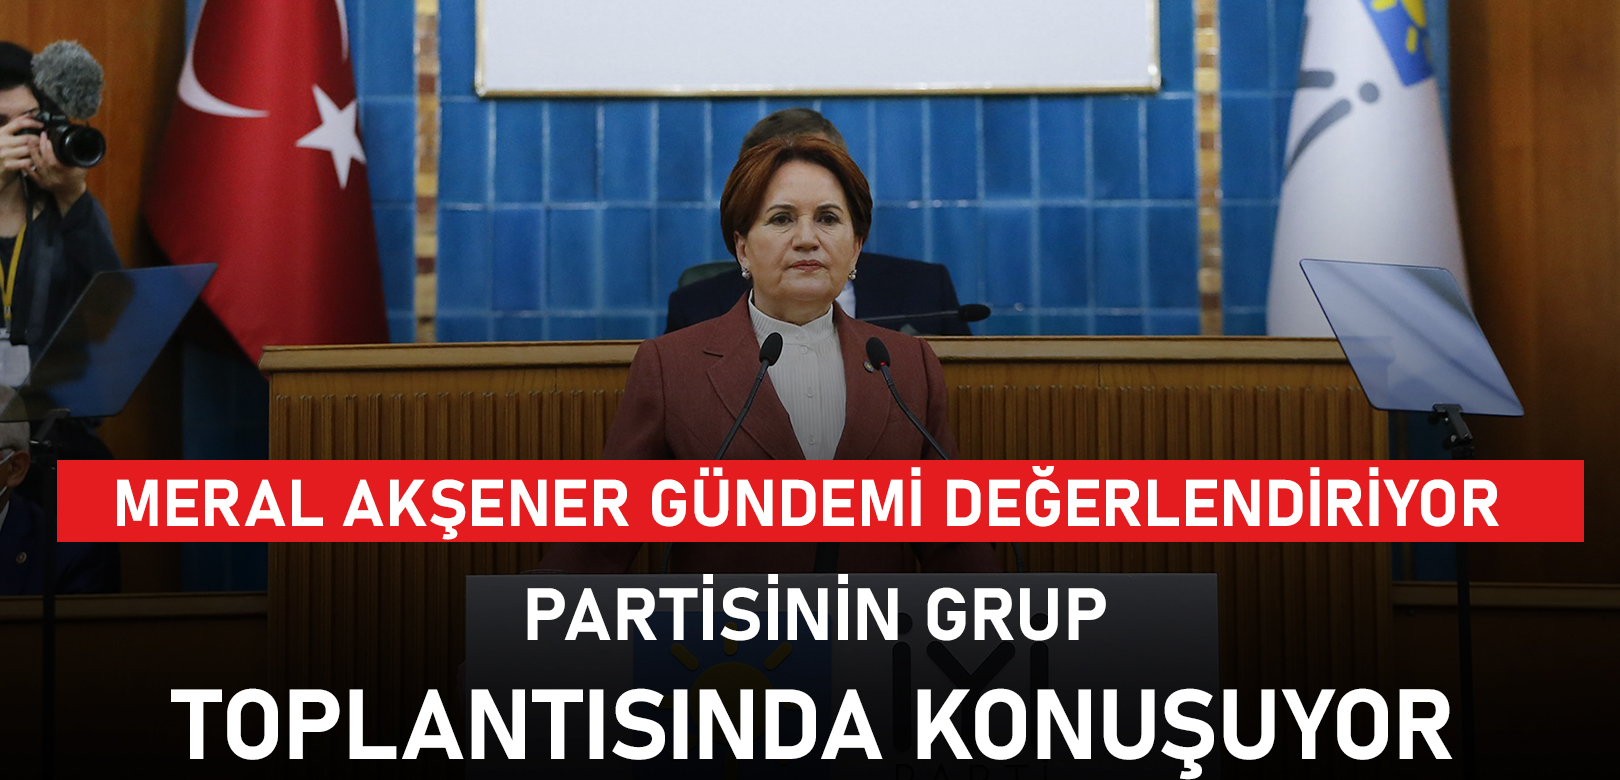 Akşener’den CHP’ye billboard tepkisi: Bizi engellemeye çalışan saray değil Saraçhane